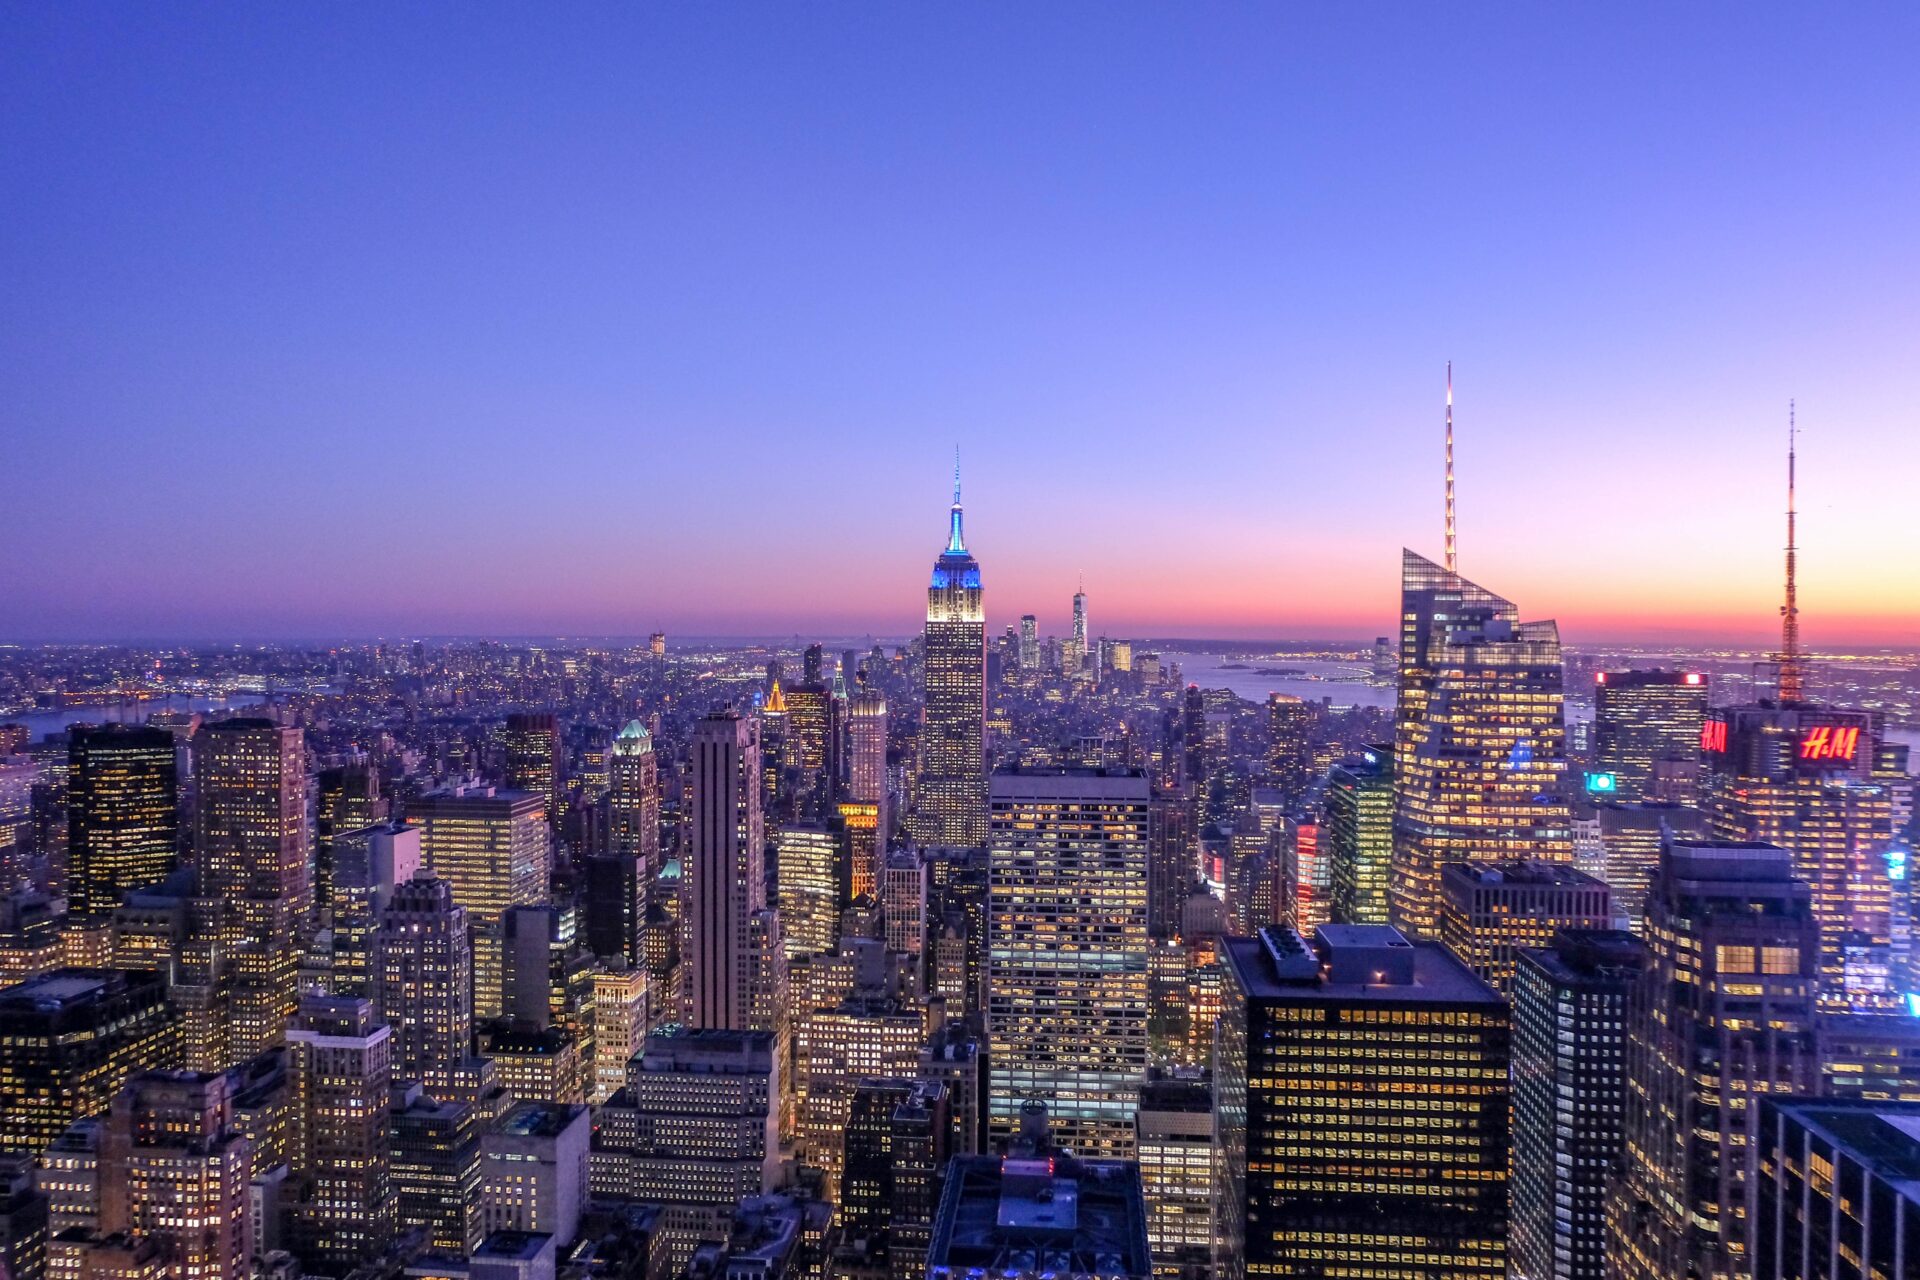 The new york city skyline at dusk.